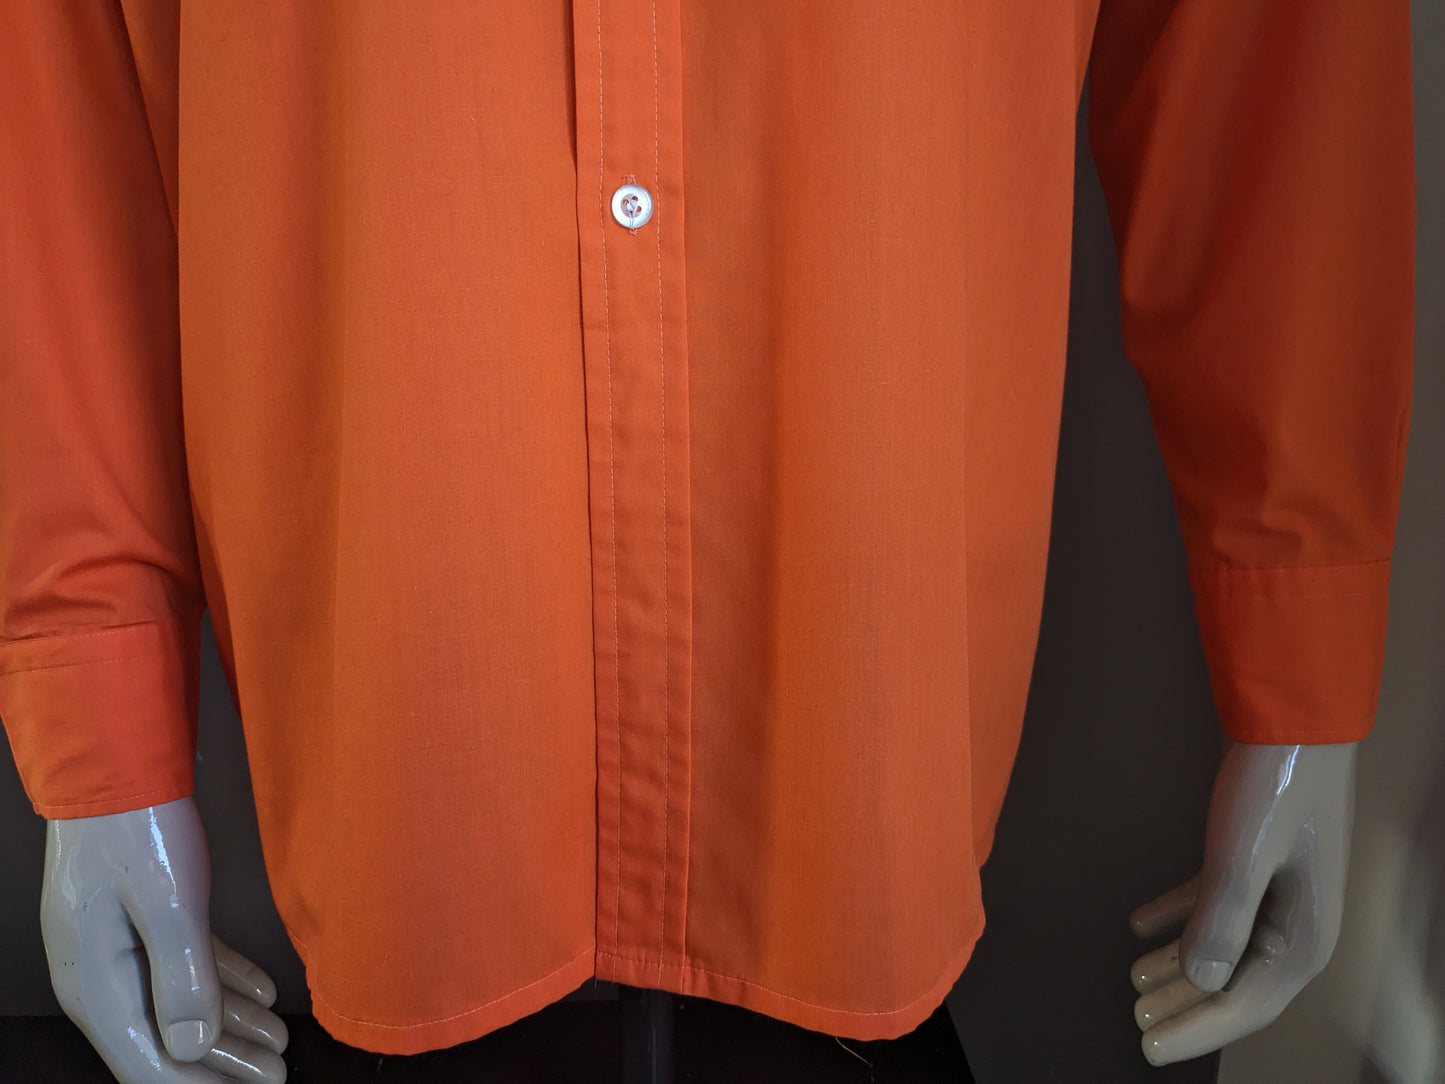 Shirt Curo des années 70 avec col Point. De couleur orange. Taille xl.